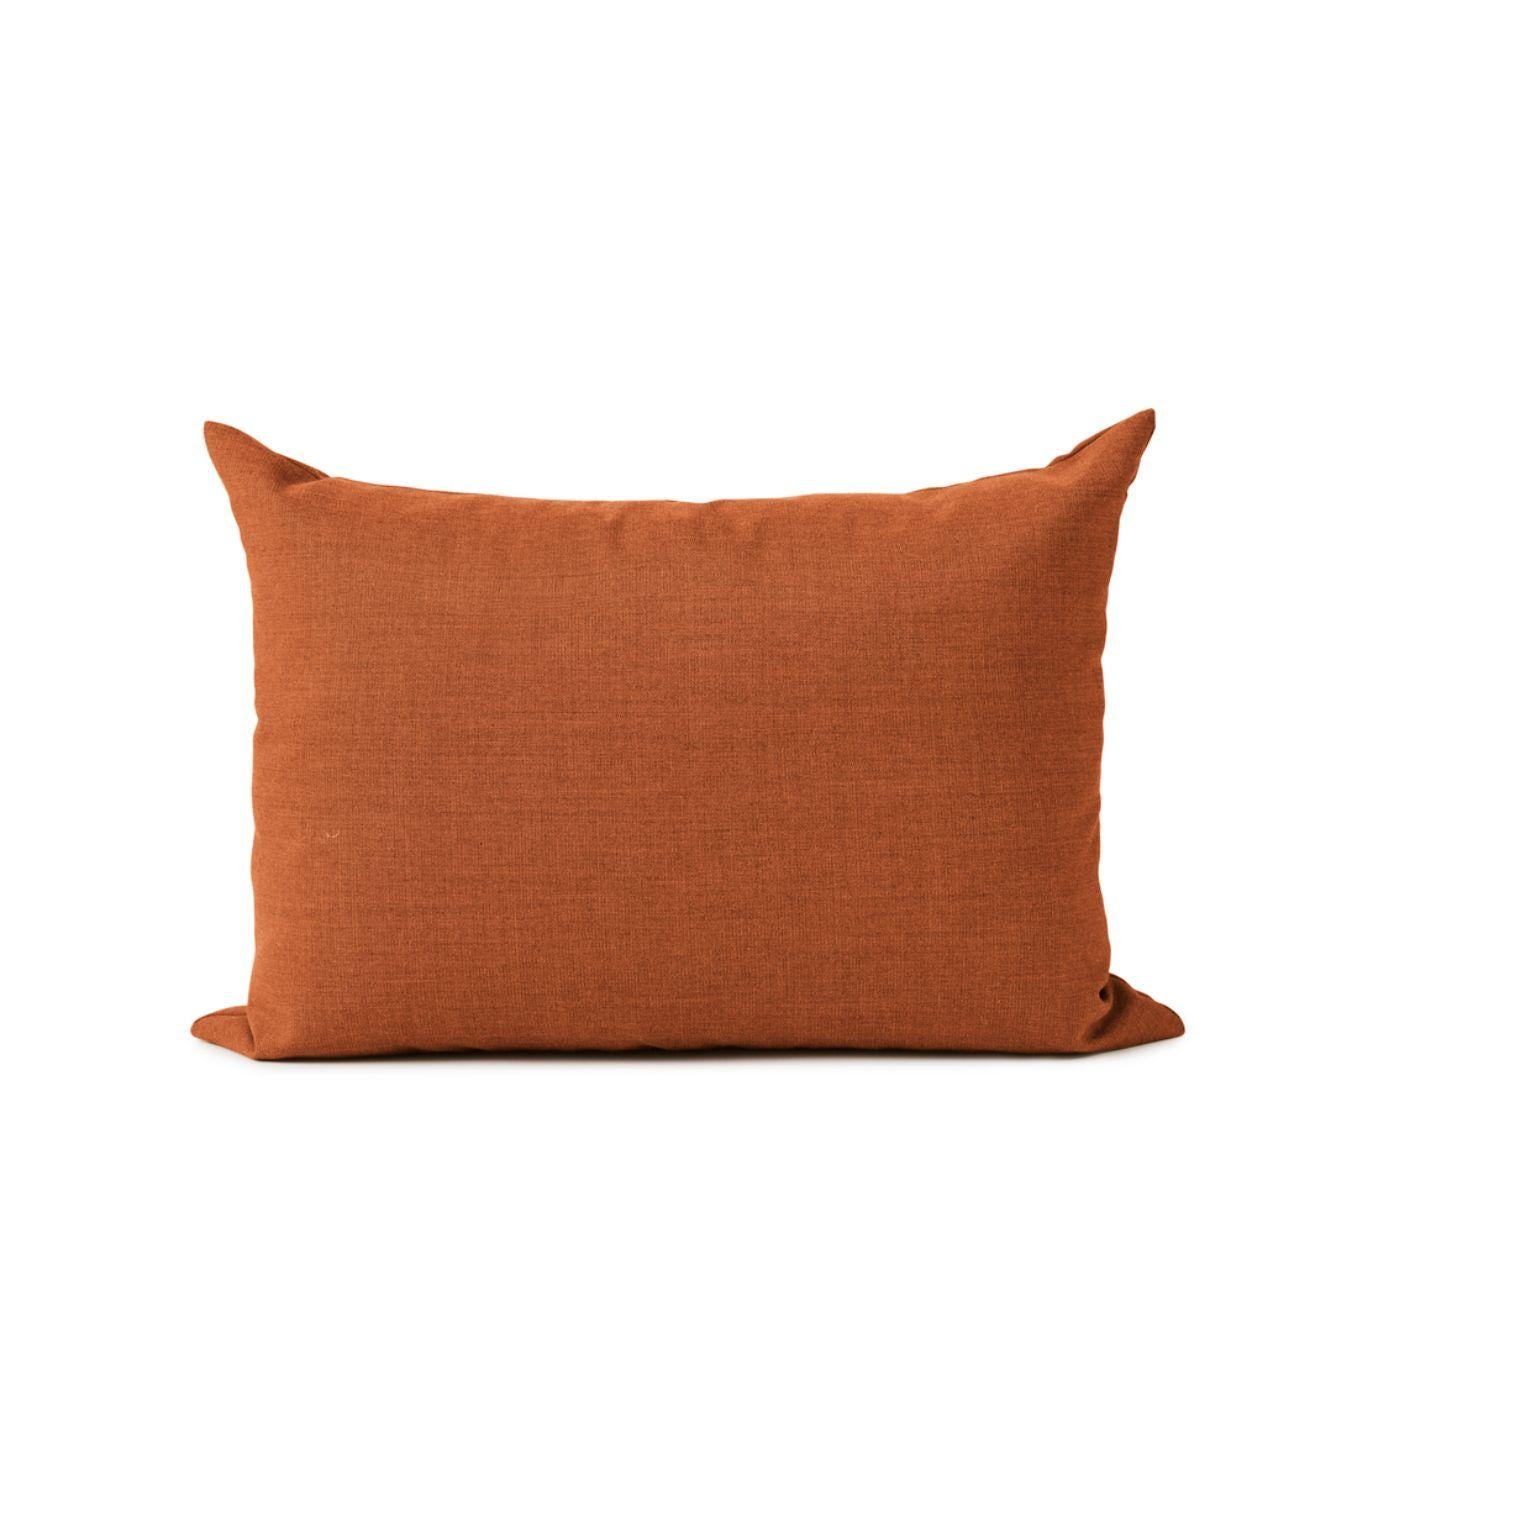 Coussin Galore carré orange brûlé par Warm Nordic
Dimensions : D70 x H 50 cm
Matière : Tissu d'ameublement, rembourrage en granulés et plumes.
Poids : 1.4 kg
Également disponible en différentes couleurs et finitions. 

Un élégant coussin de canapé